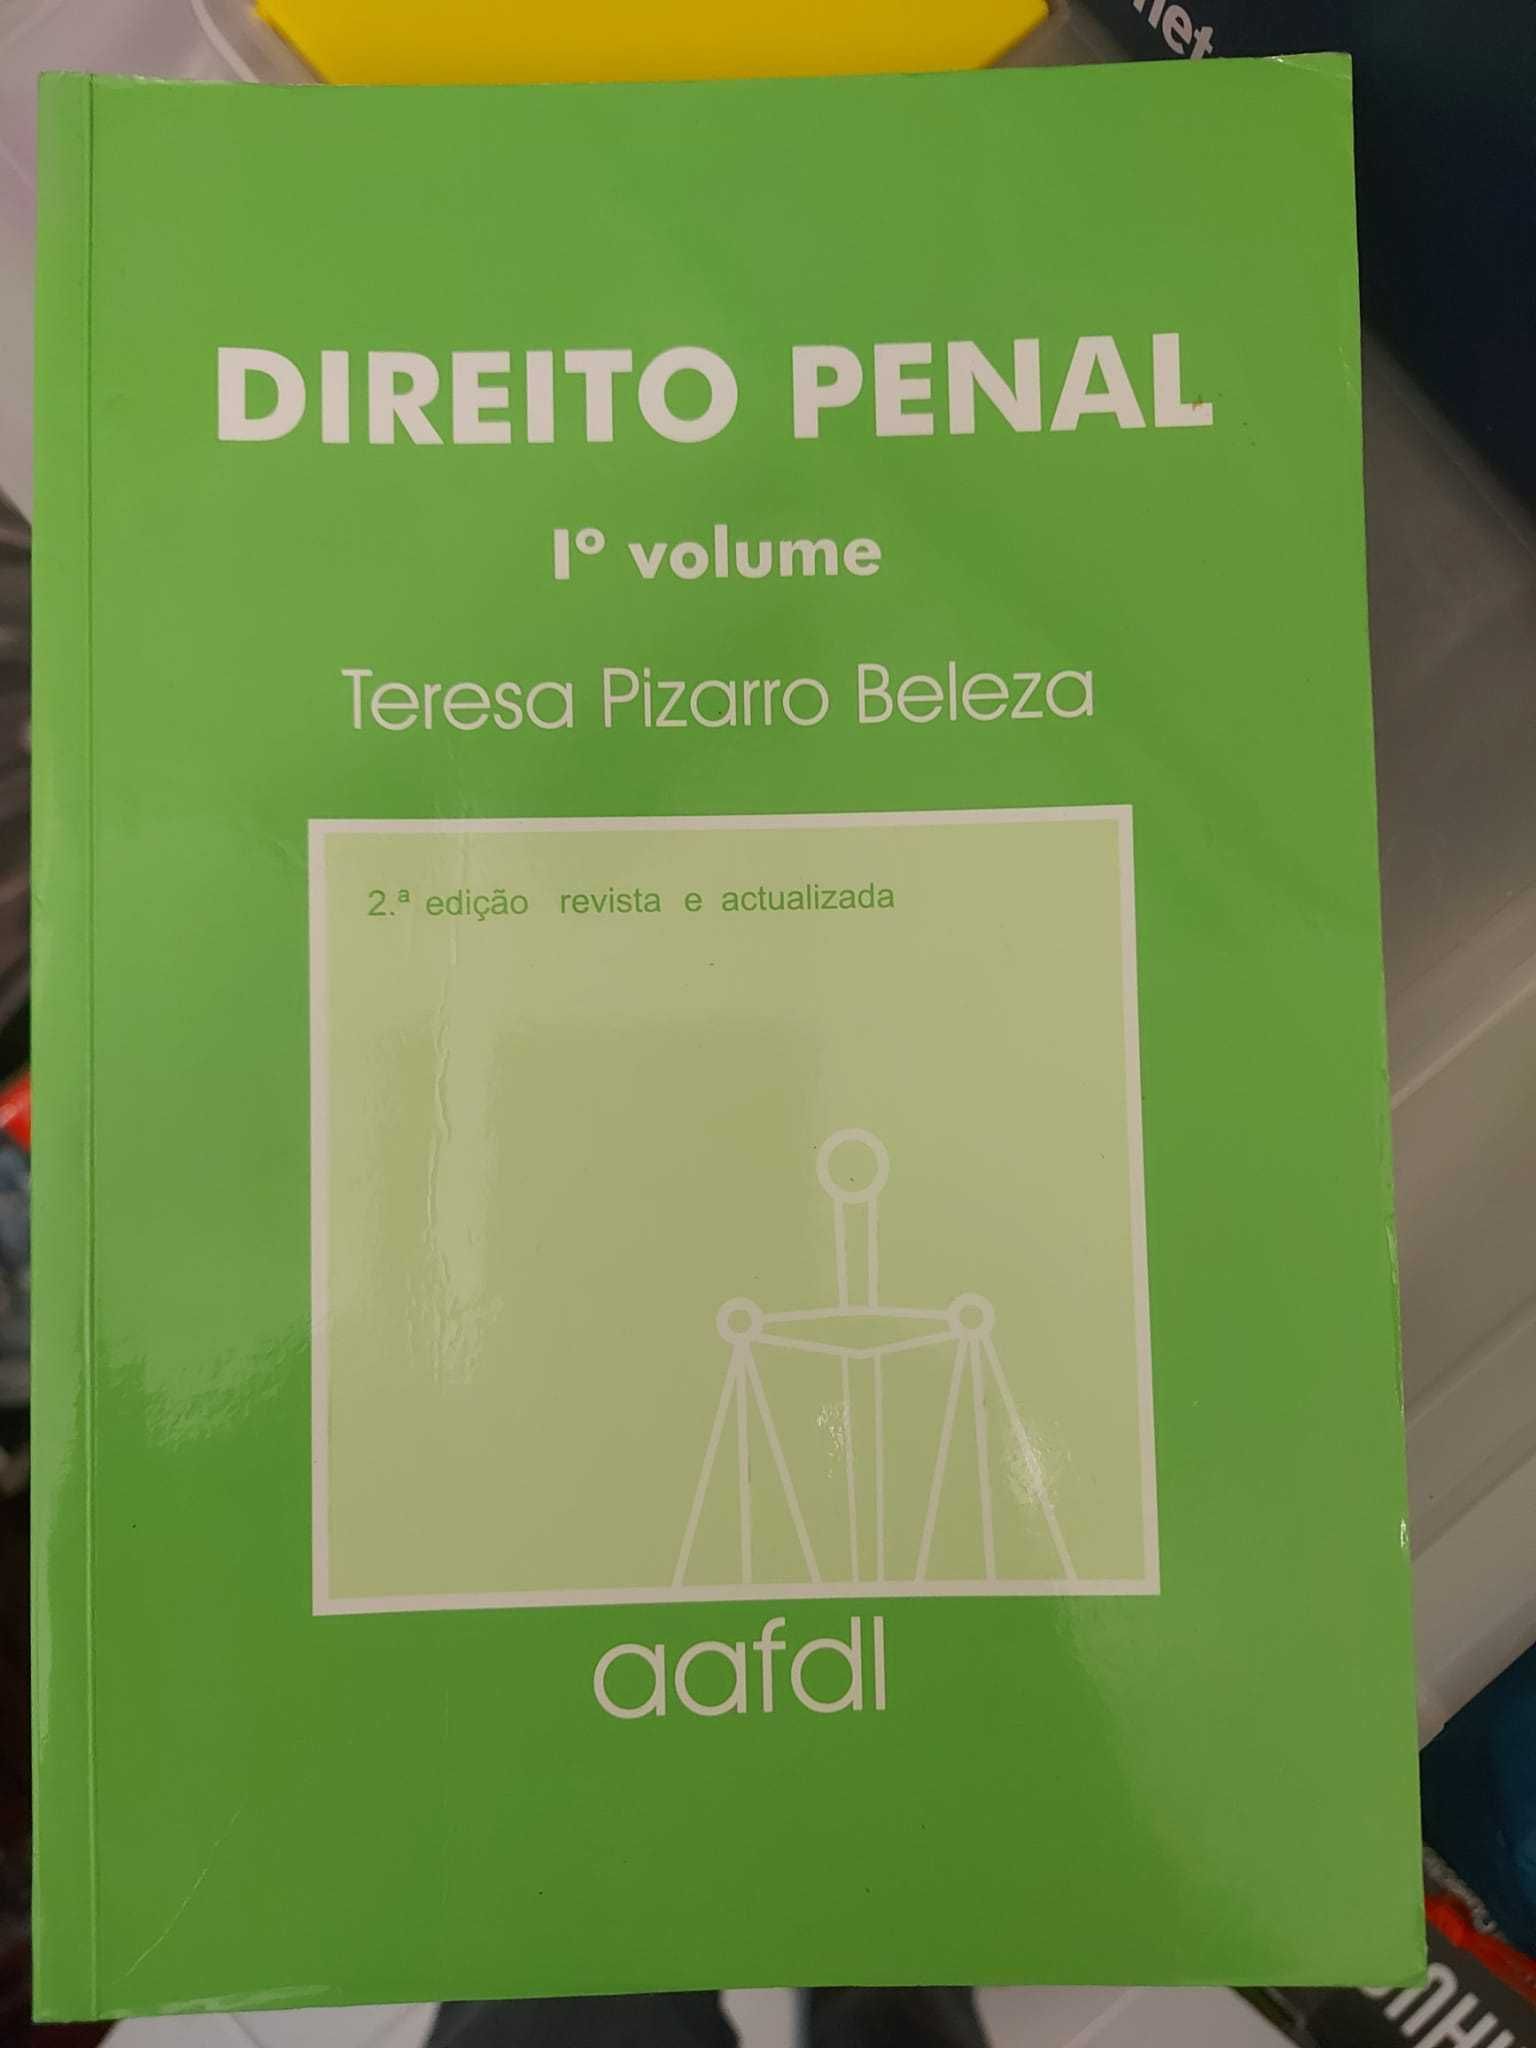 Direito Penal (Vol. I), Teresa Pizarro Beleza